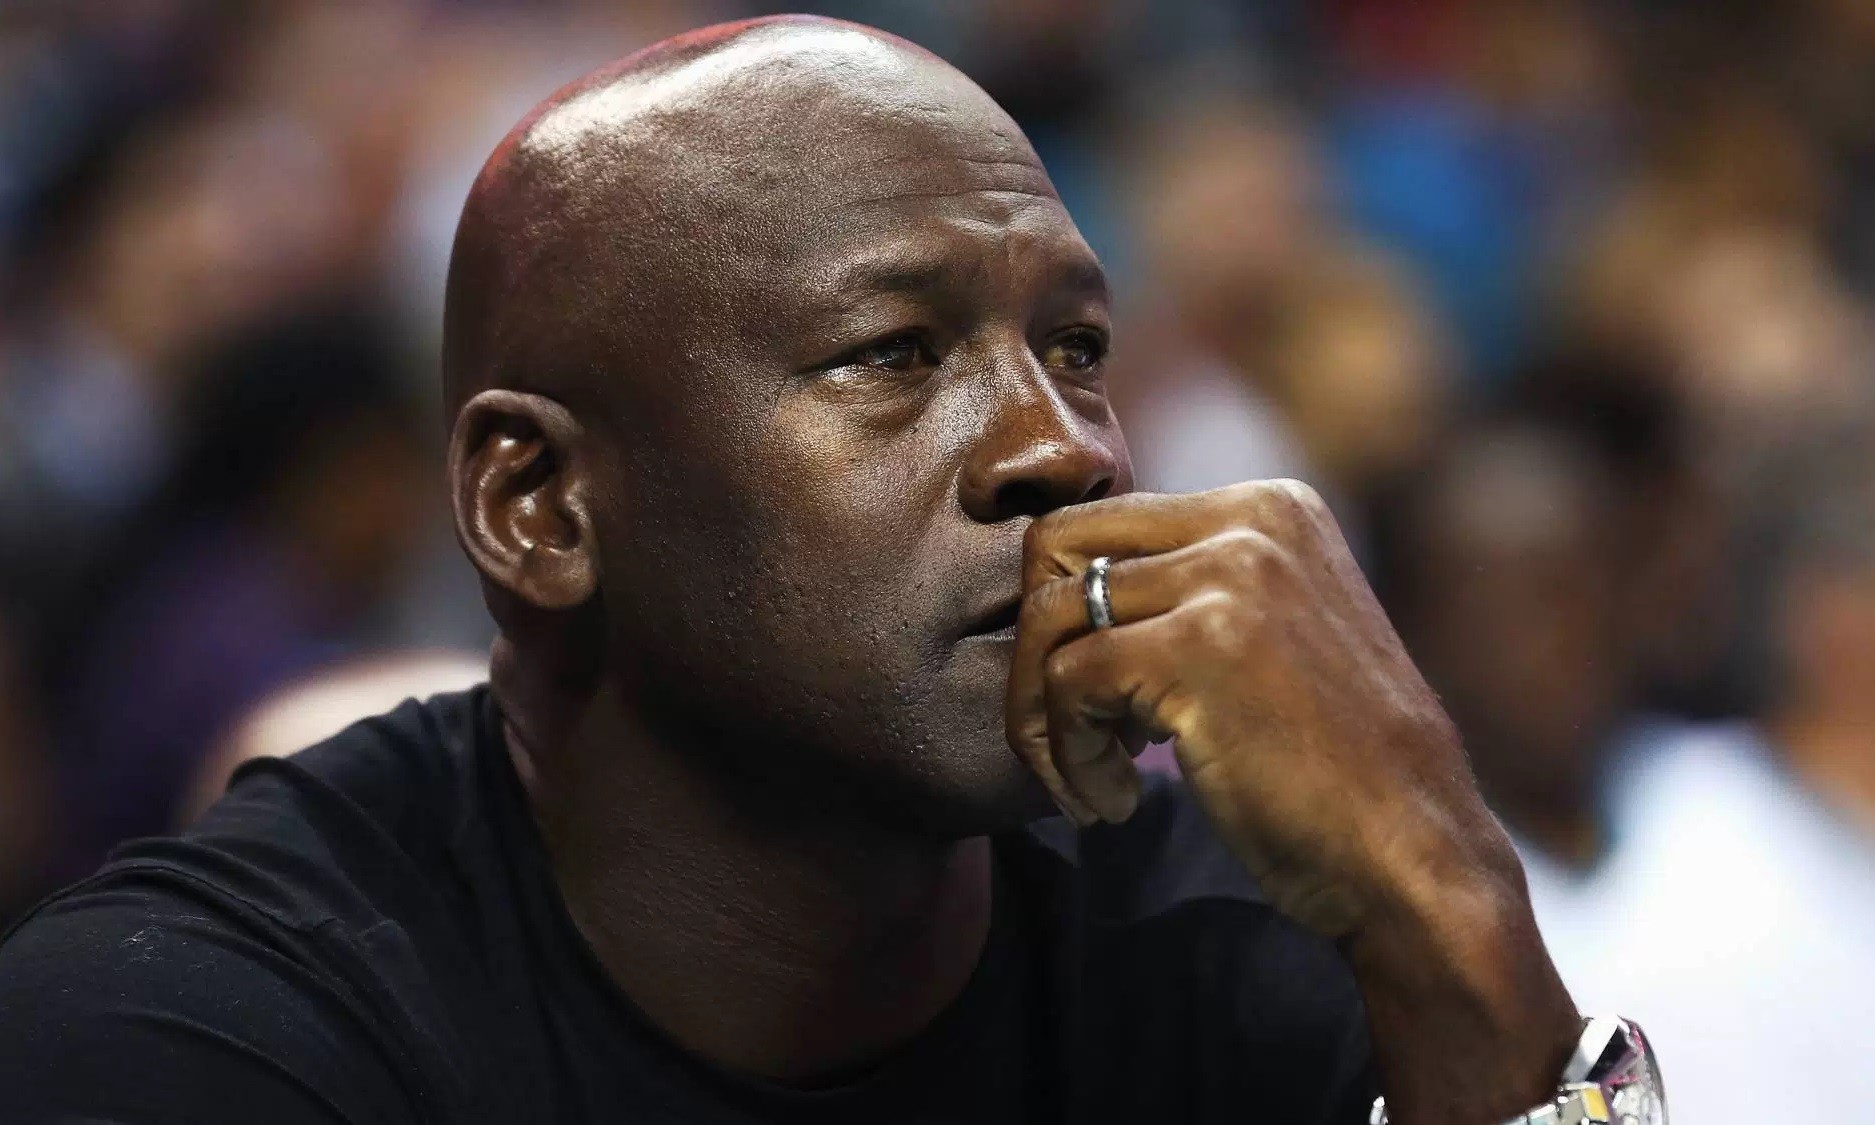 “我不能继续沉默下去了”，Michael Jordan 捐款 200 万美金呼吁解决种族暴力事件